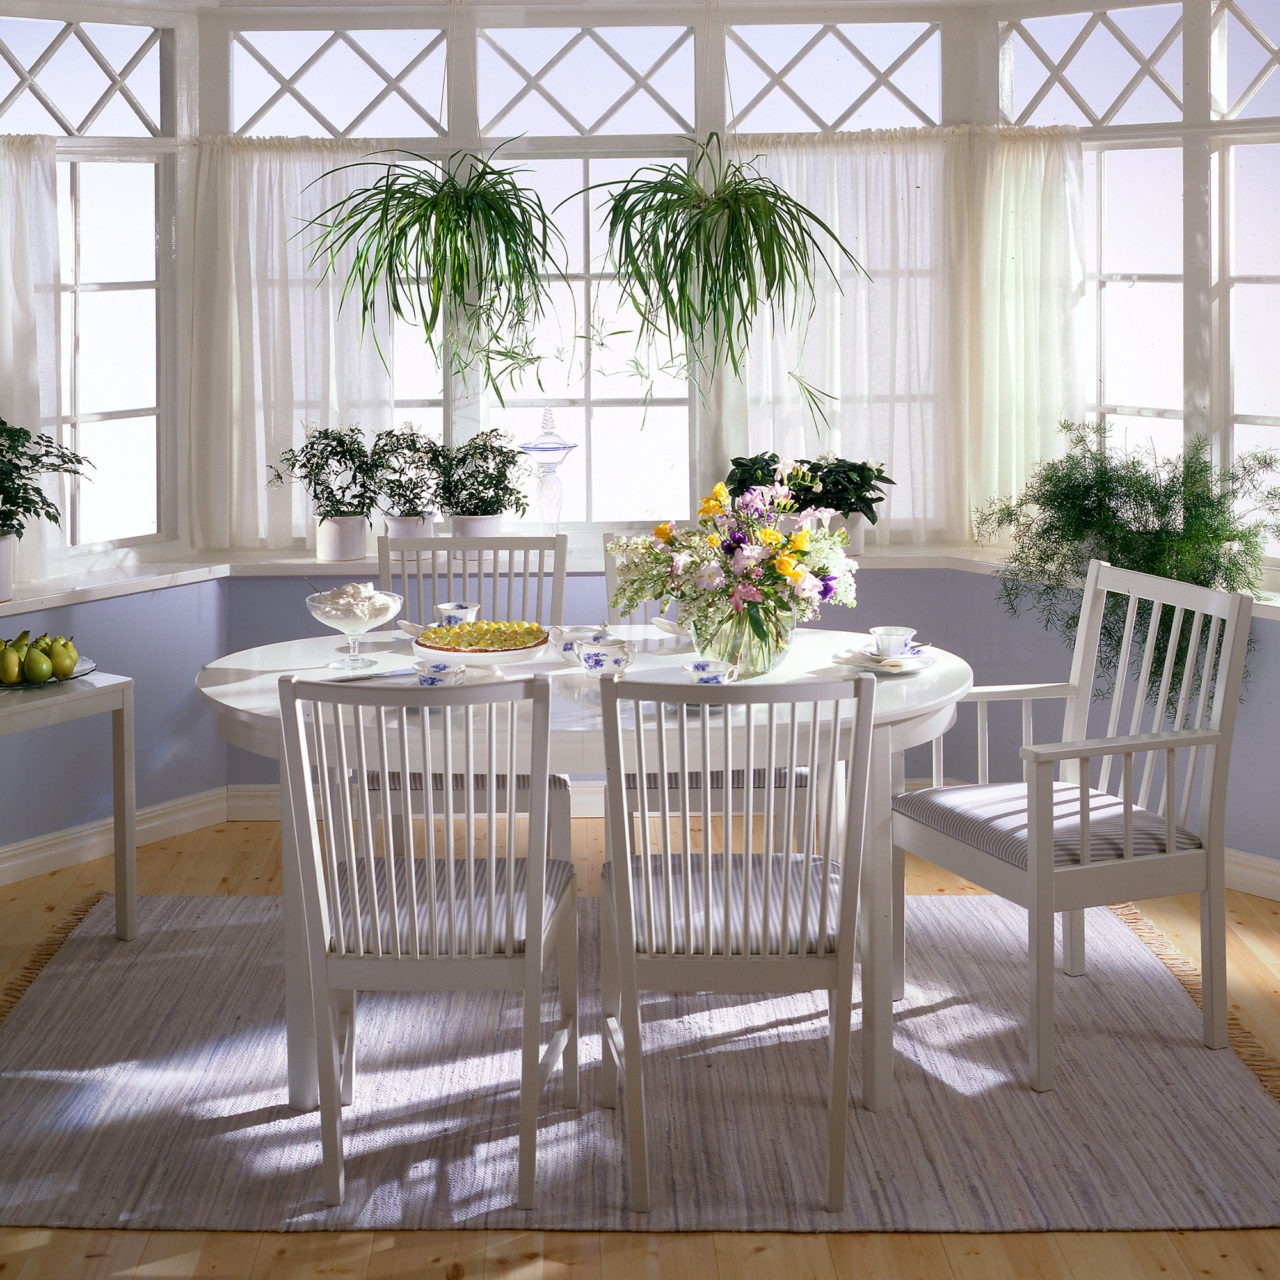 Fauteuil et chaises à barreaux autour d’une table ovale, modèle STOCKHOLM blanc, dans une pièce claire avec grandes fenêtres.